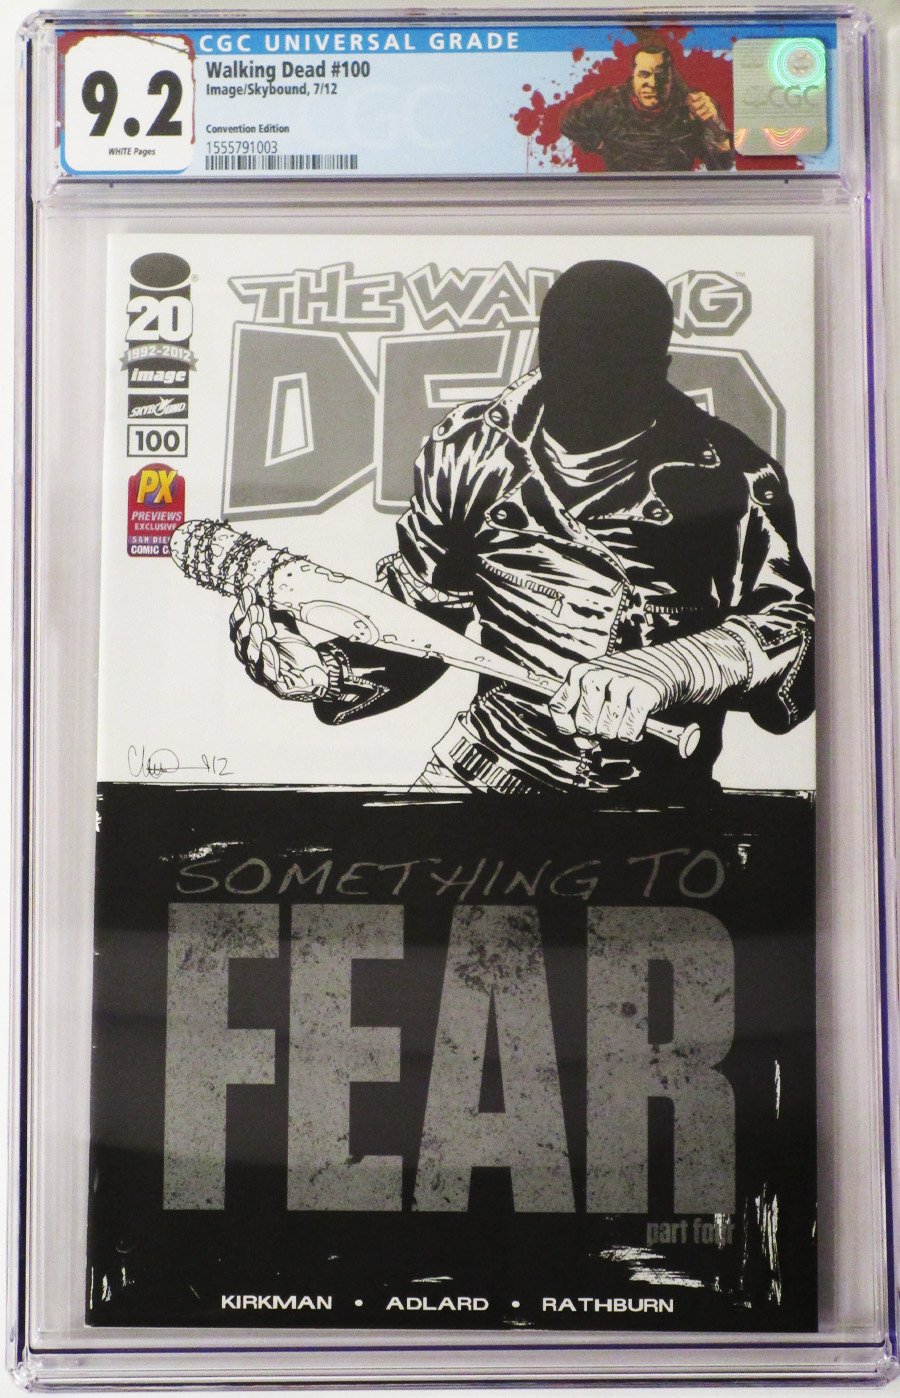 Walking Dead #100 CGC 9.2 SDCC 2012 Retailer Exclusive Charlie Adlard Regular Sketch Cover